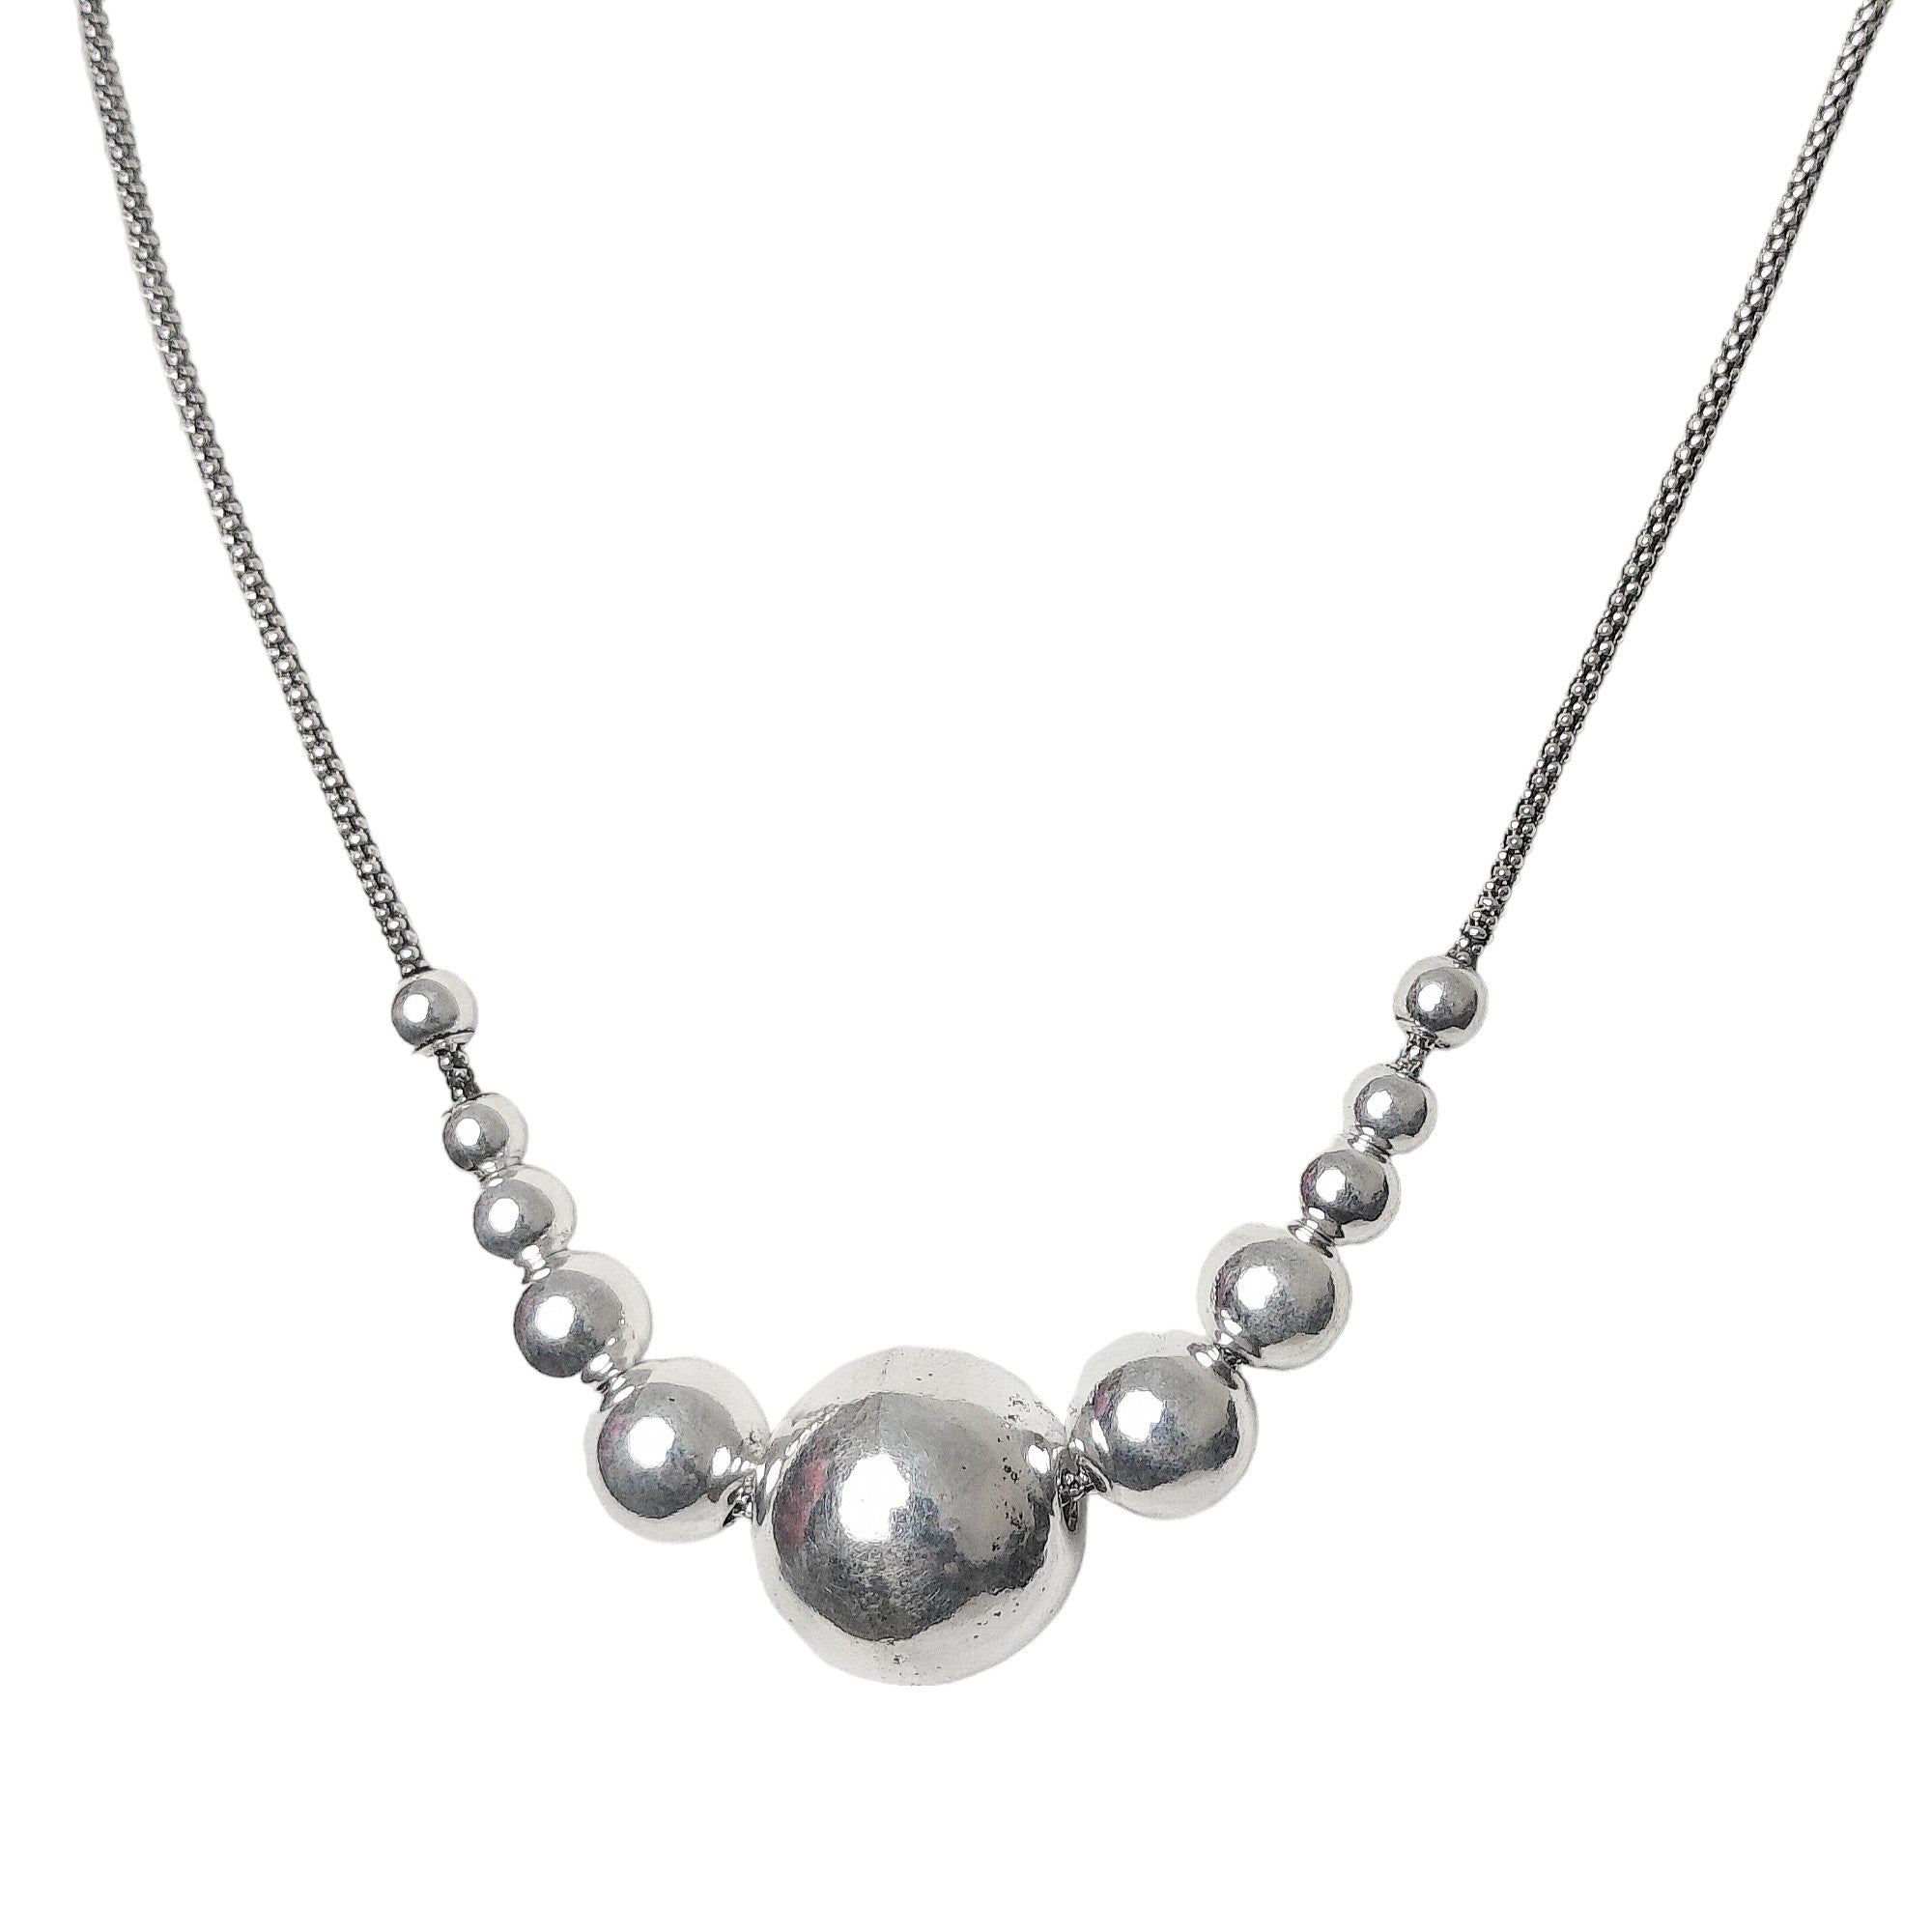 Exquisite 925 Silver Ball Neck Piece for Women - Rivansh